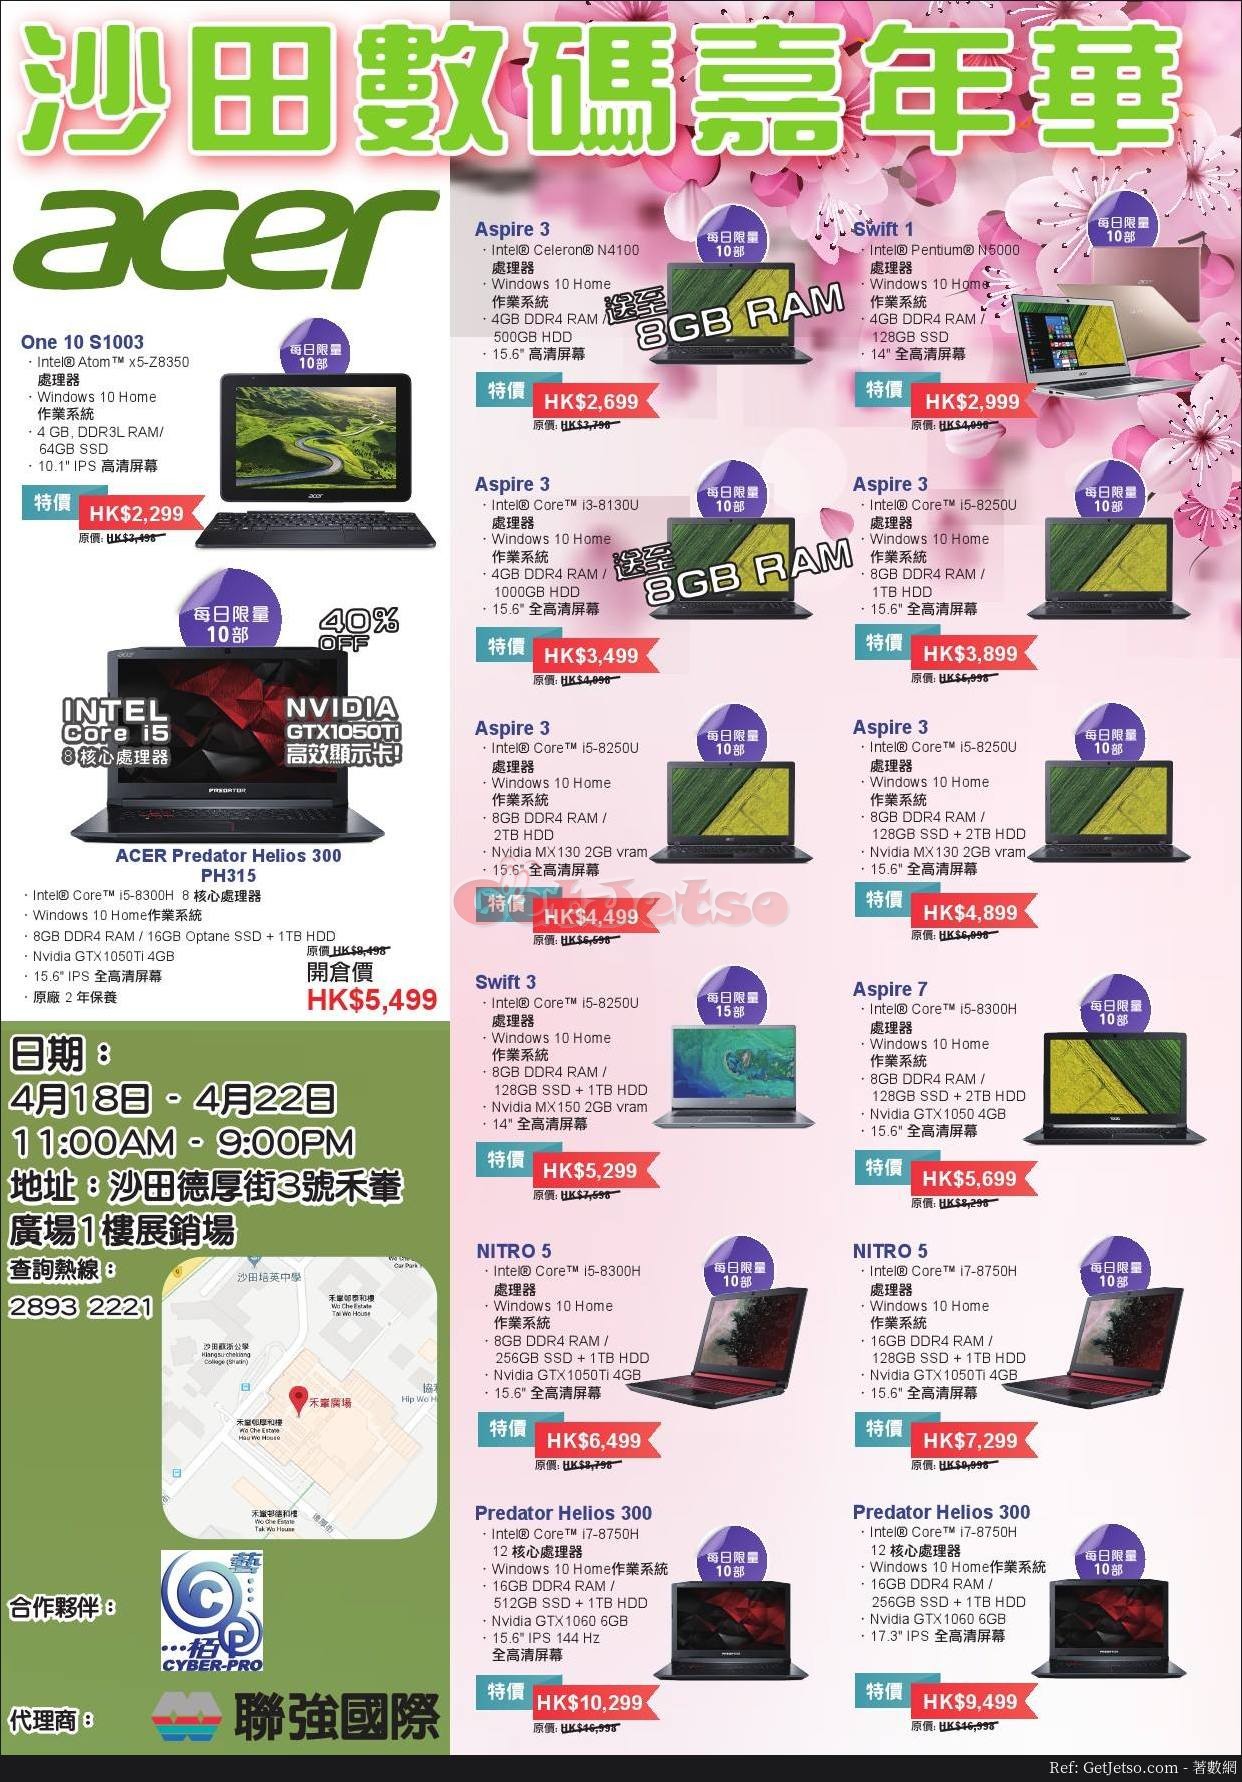 低至5折電腦減價優惠@沙田數碼嘉年華(19年4月18-22日)圖片3